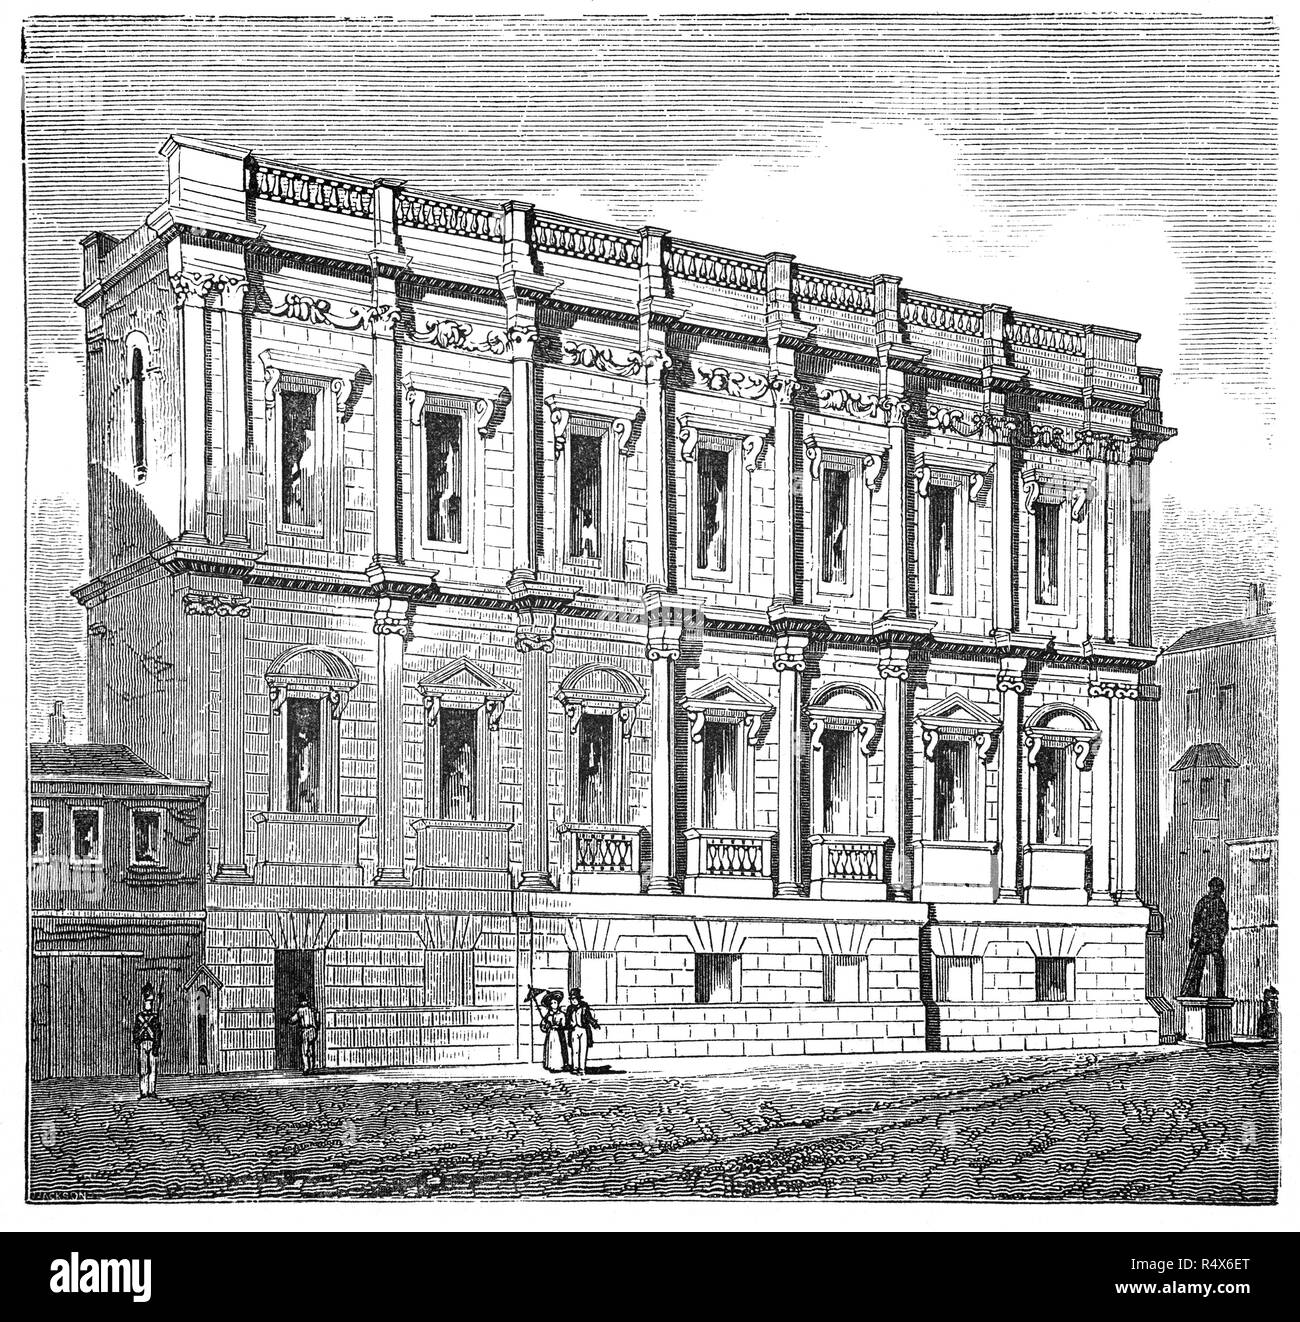 Das Banqueting House, Whitehall, ist der grösste und bekannteste Überlebende der architektonischen Genre der Bankett- Haus und bleibt nur noch die Komponente der Palast von Whitehall. Das Gebäude ist wichtig in der Geschichte der englischen Architektur als die erste Struktur in der neo-klassischen Stil, der englischen Architektur zu verwandeln abgeschlossen werden. Im Jahre 1619 begonnen und von Inigo Jones entworfen, es war im Jahre 1622, 27 Jahre vor dem König Charles I von England war auf einem Gerüst vor der im Januar 1649 enthauptet. Stockfoto